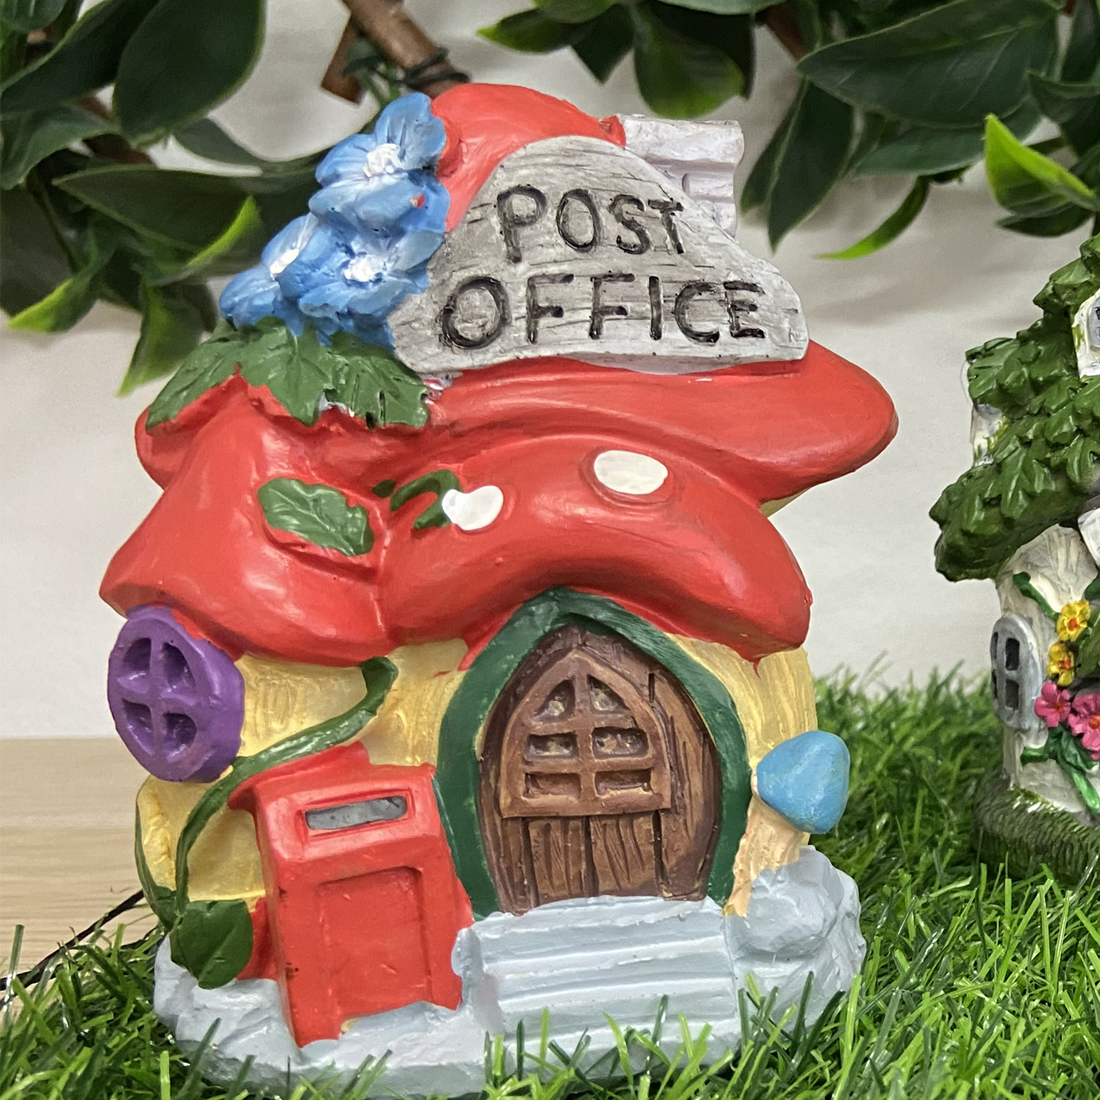 Fairy Garden Village Post Office